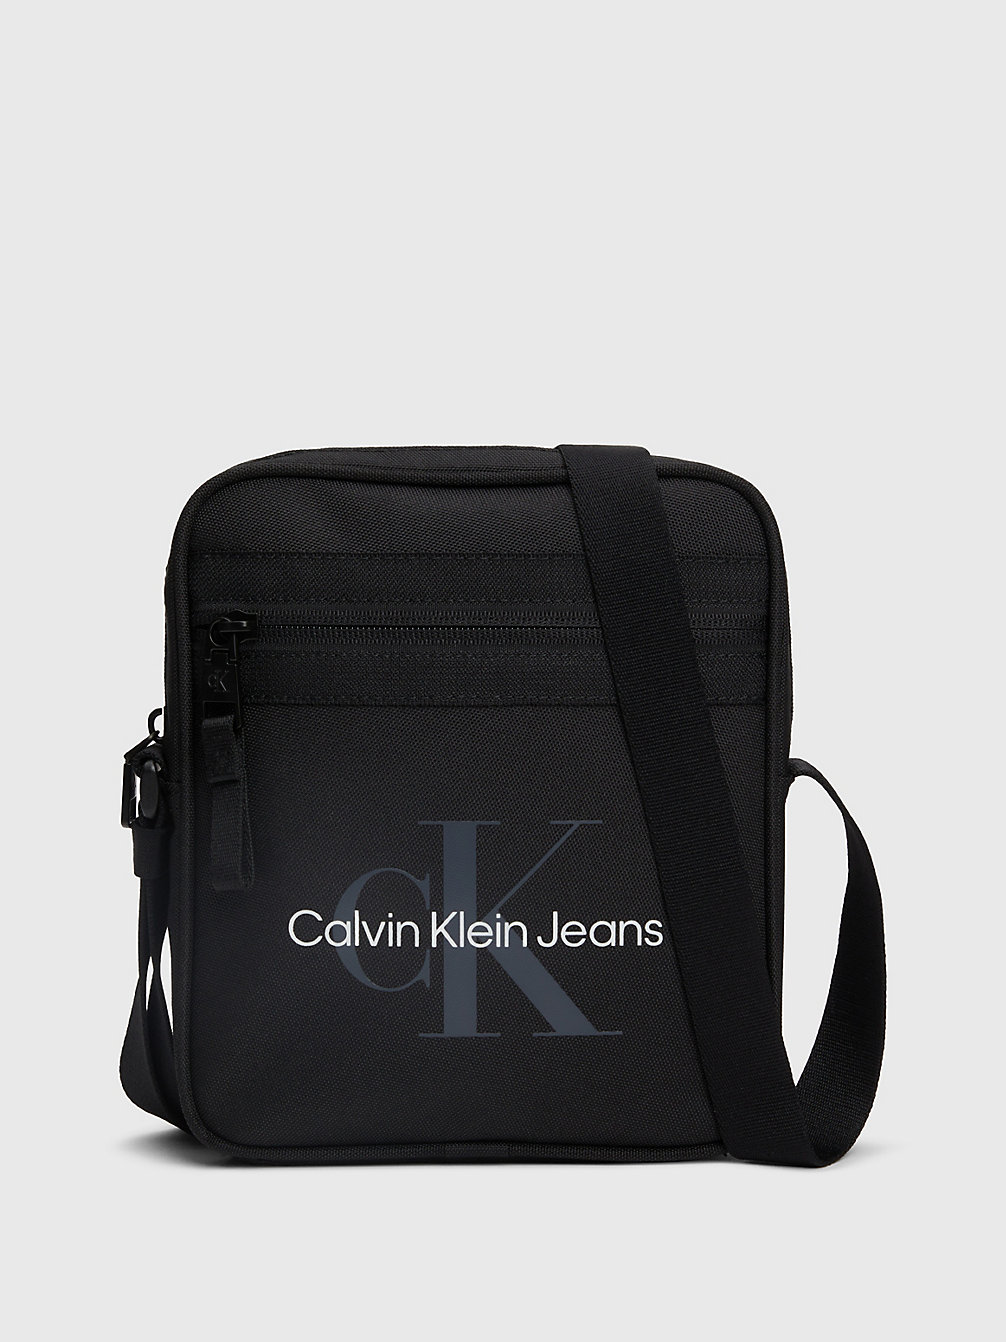 BLACK > Konduktorka Przez Ramię > undefined Mężczyźni - Calvin Klein